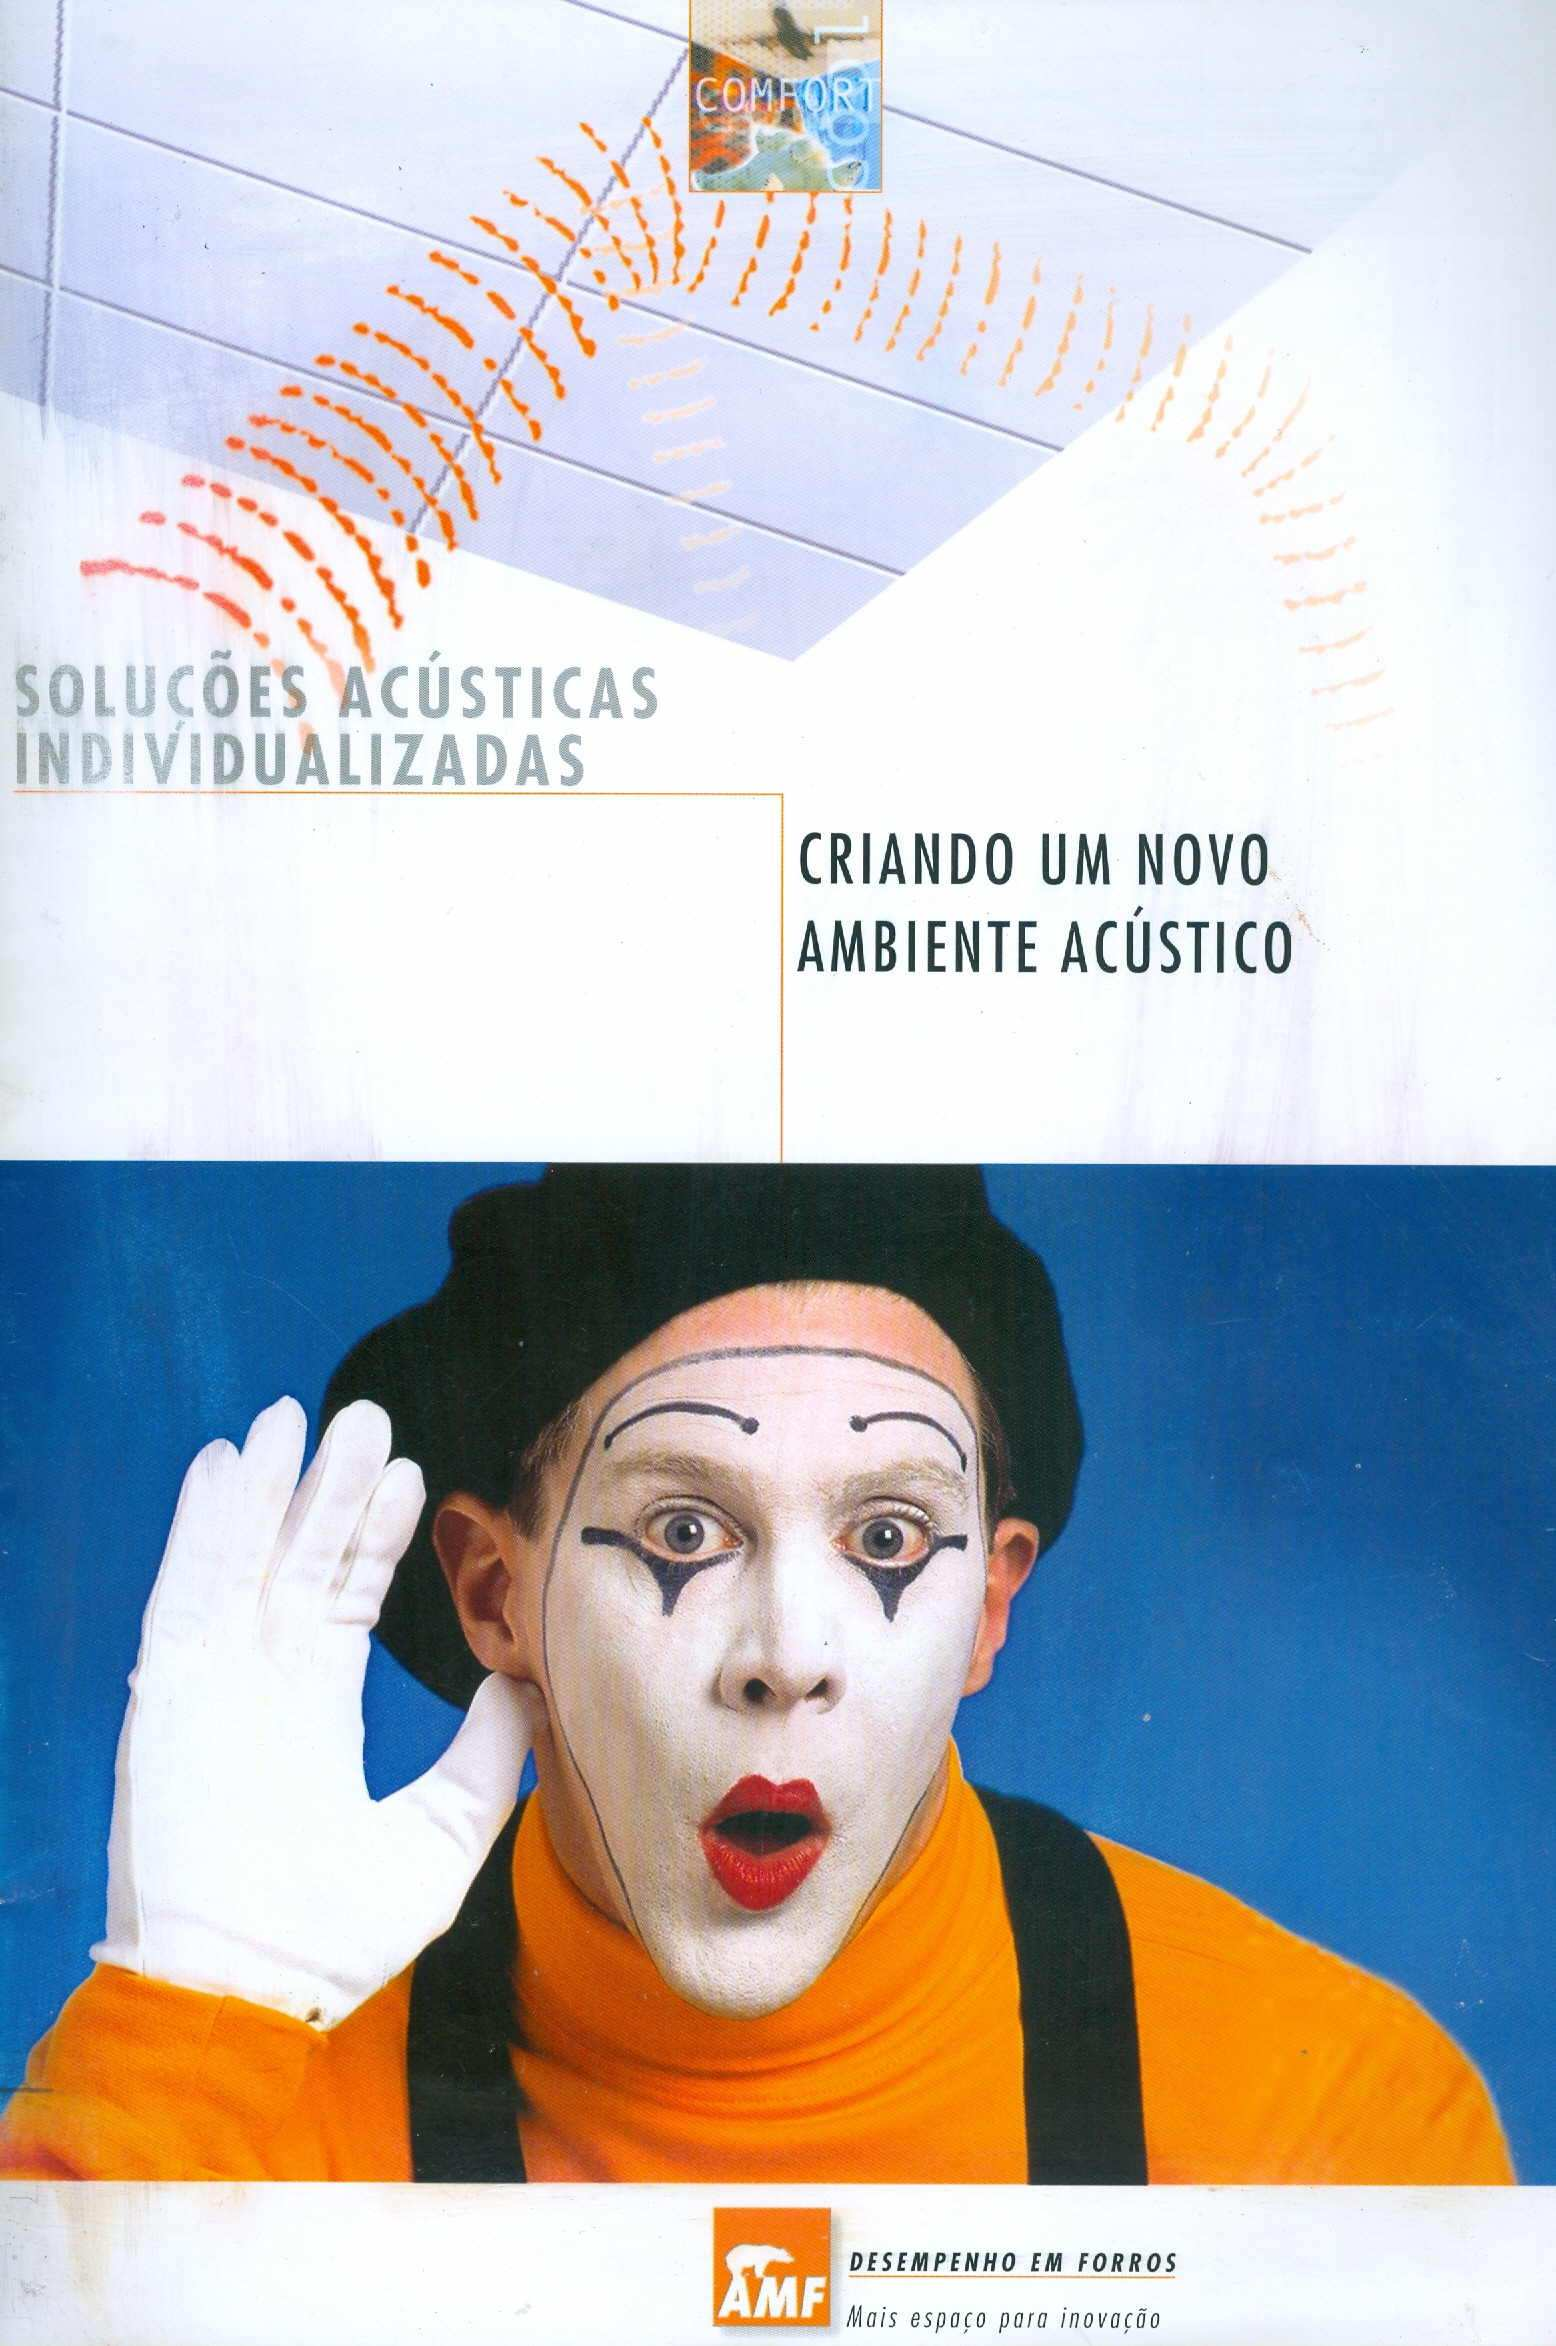 Pérides Silva Acústica arquitetônica & condicionamento de ar Apostila anexa ao exemplar (5 a edição, EDTAL, 2005) Níveis de ruído Absorção sonora Atenuação